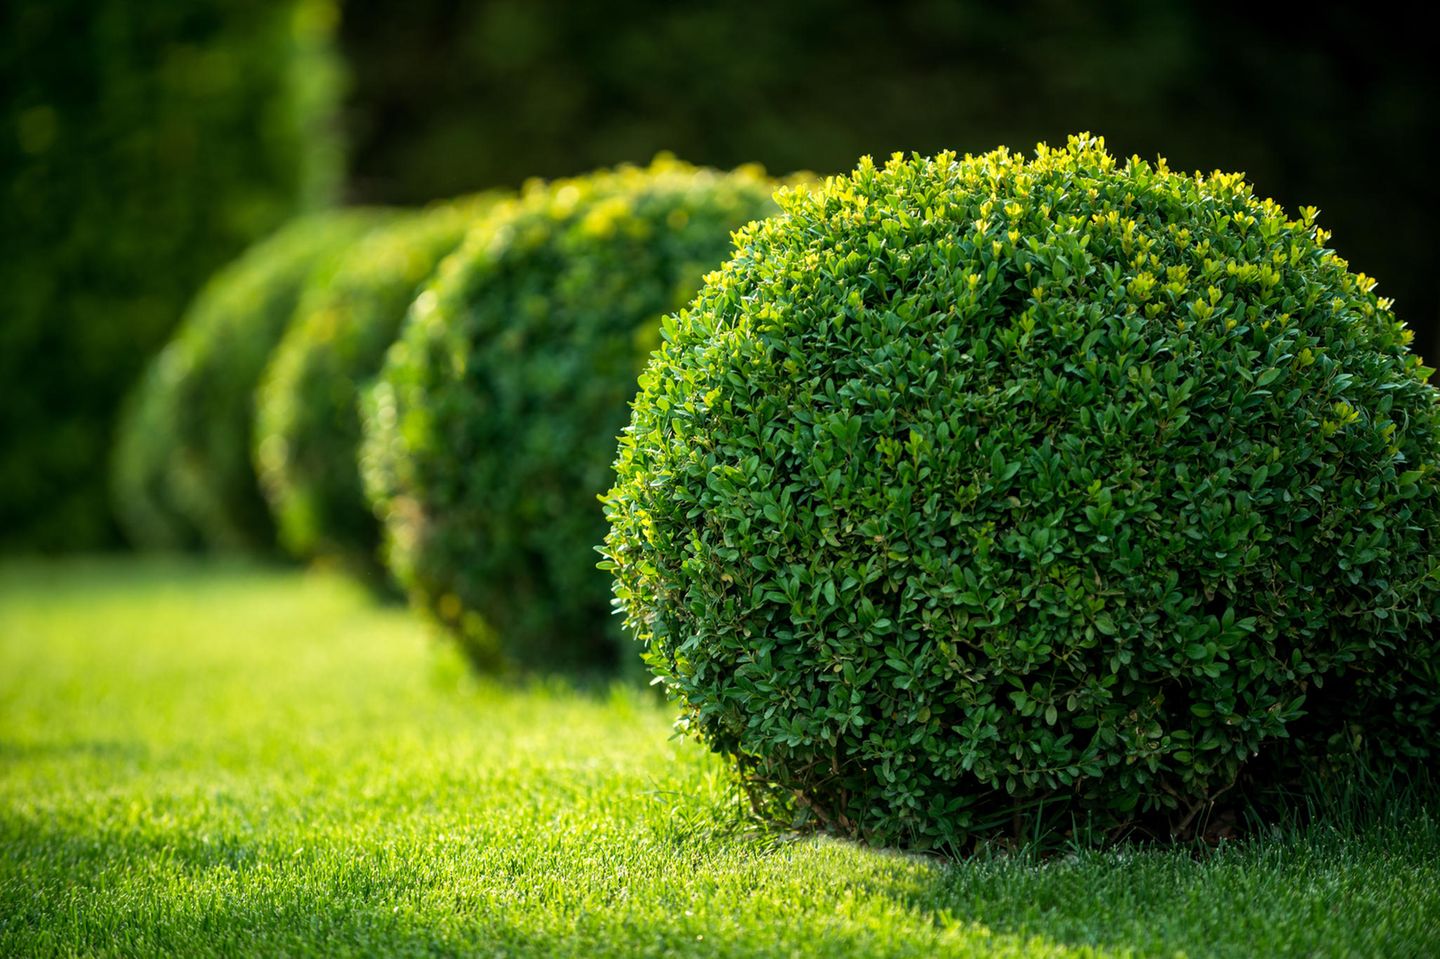 Immergrüne Pflanzen: So bleibt dein Garten ganzjährig grün | BRIGITTE.de